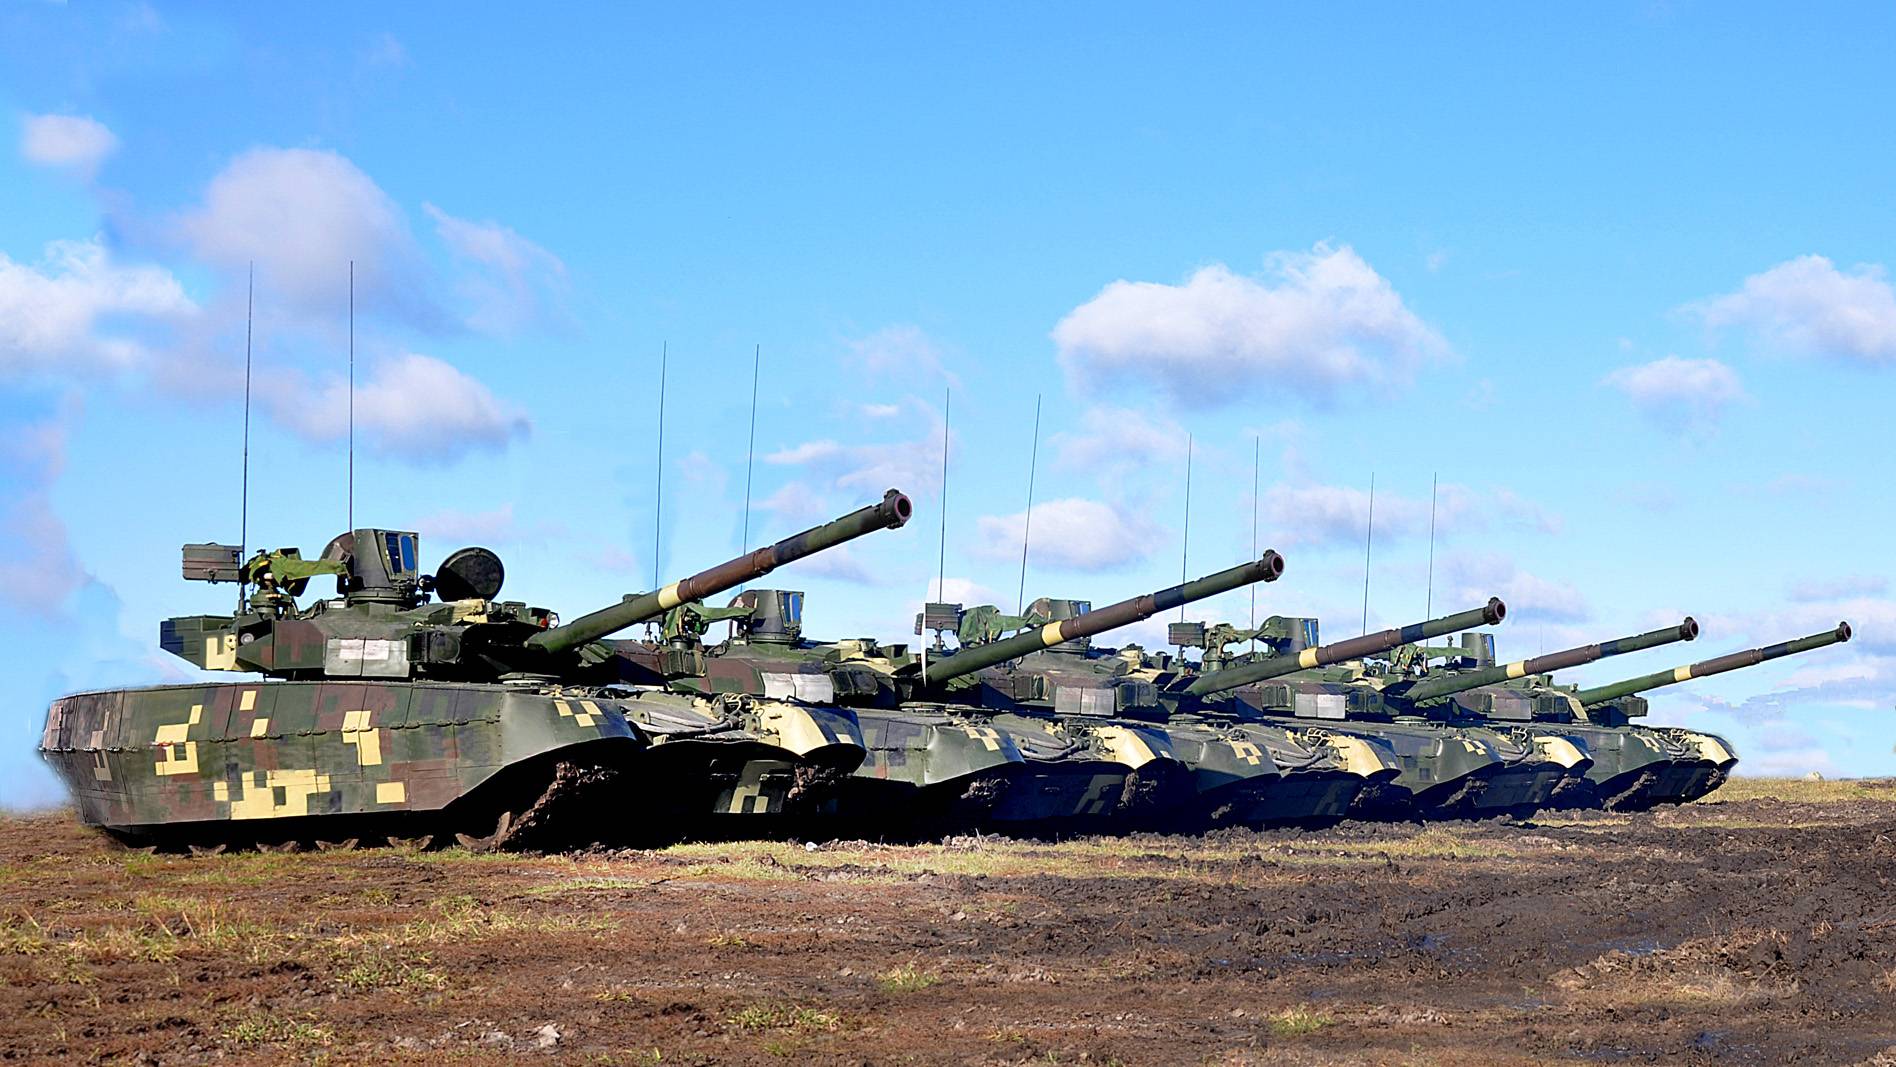 Тяжёлый груз: как провал украины на военном конкурсе в германии объяснили «трясущейся пушкой» новых танков — рт на русском